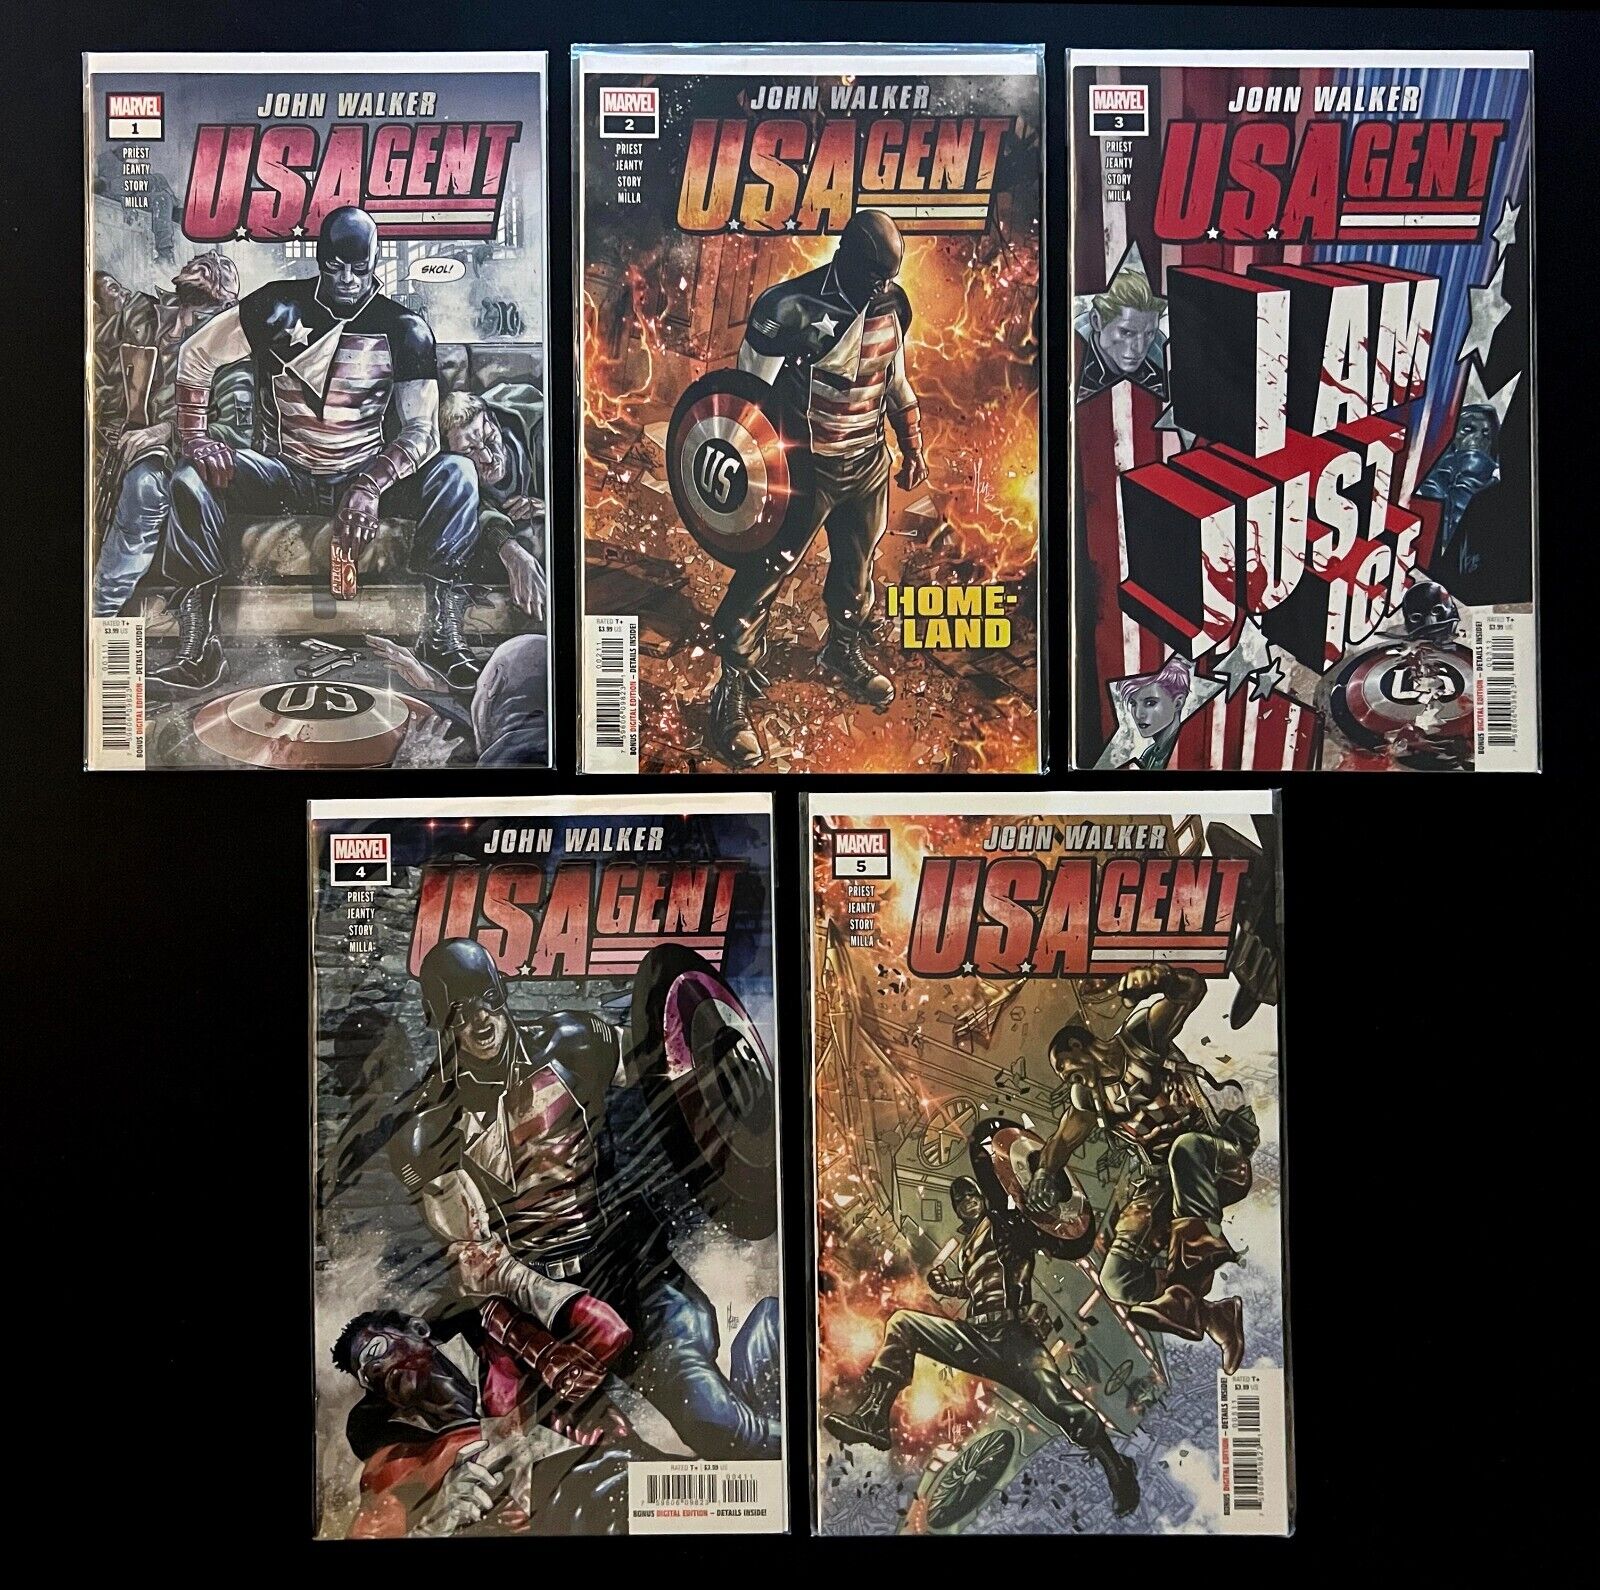 JOHN WALKER: U.S. AGENT #1-5 Hi-Grade Complete Series Set MCU Marvel Comics 2020